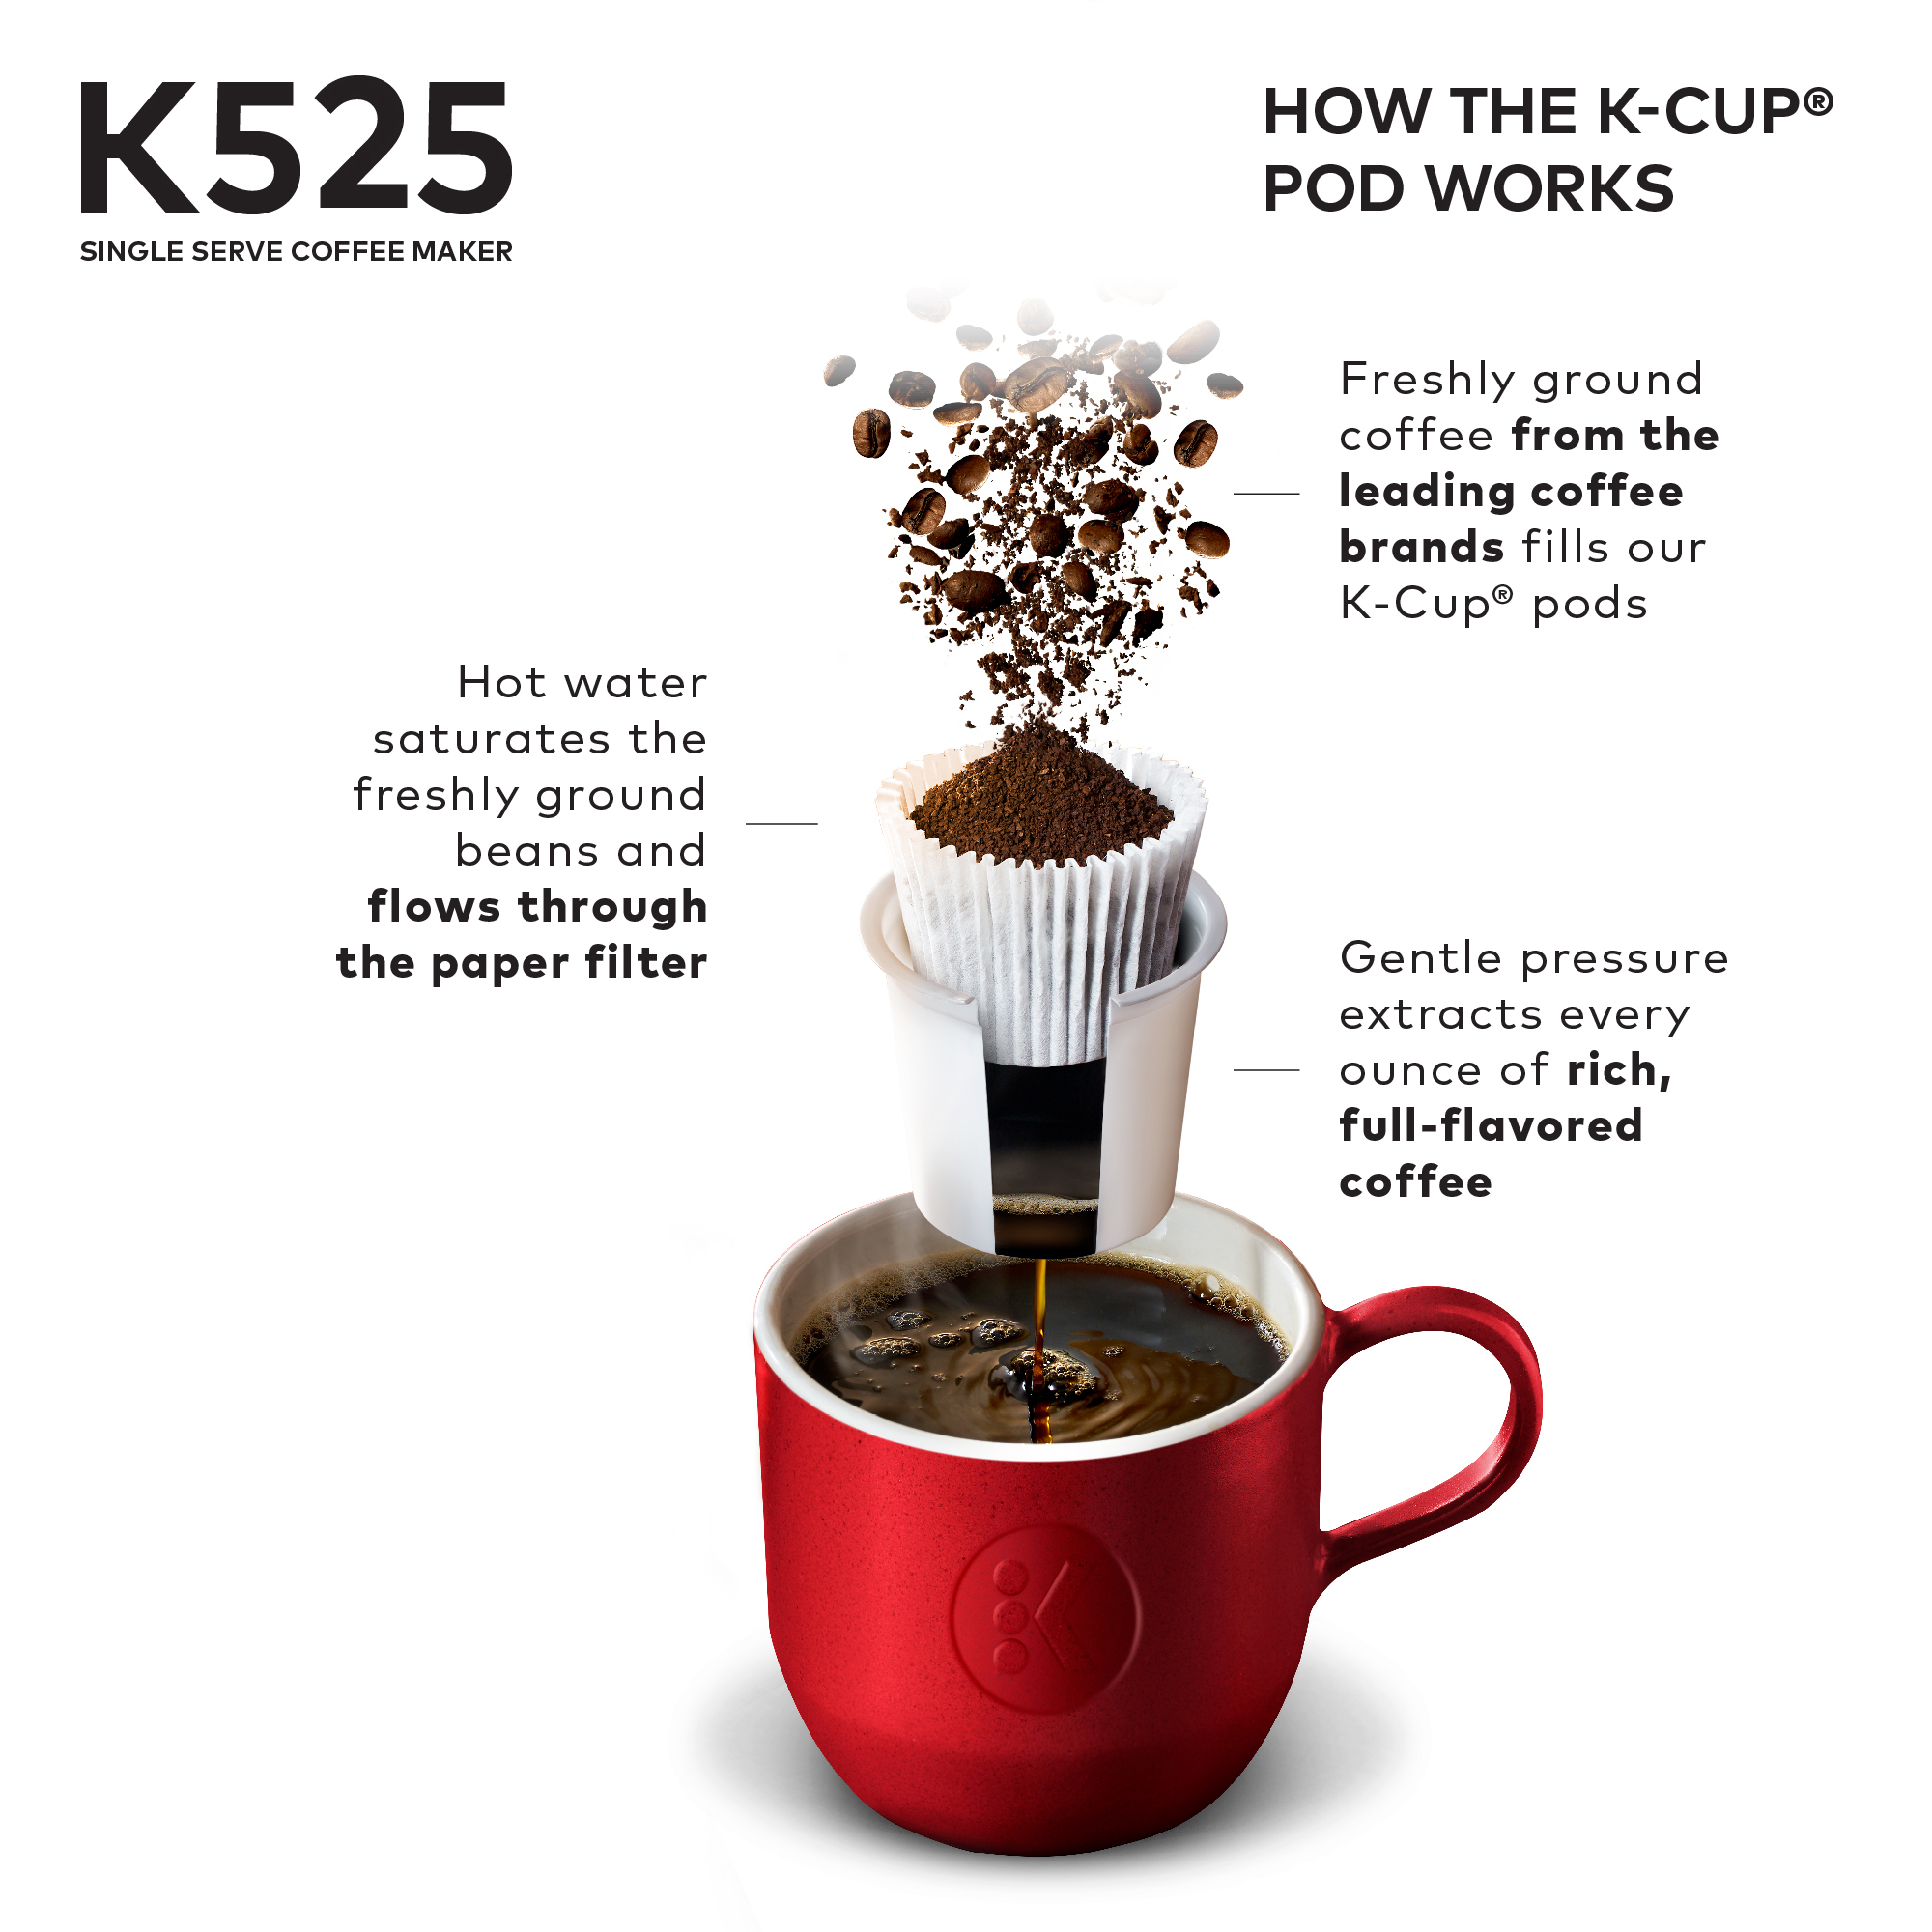 Keurig K525 Single Serve K-Cup Coffee Maker - image 3 of 11